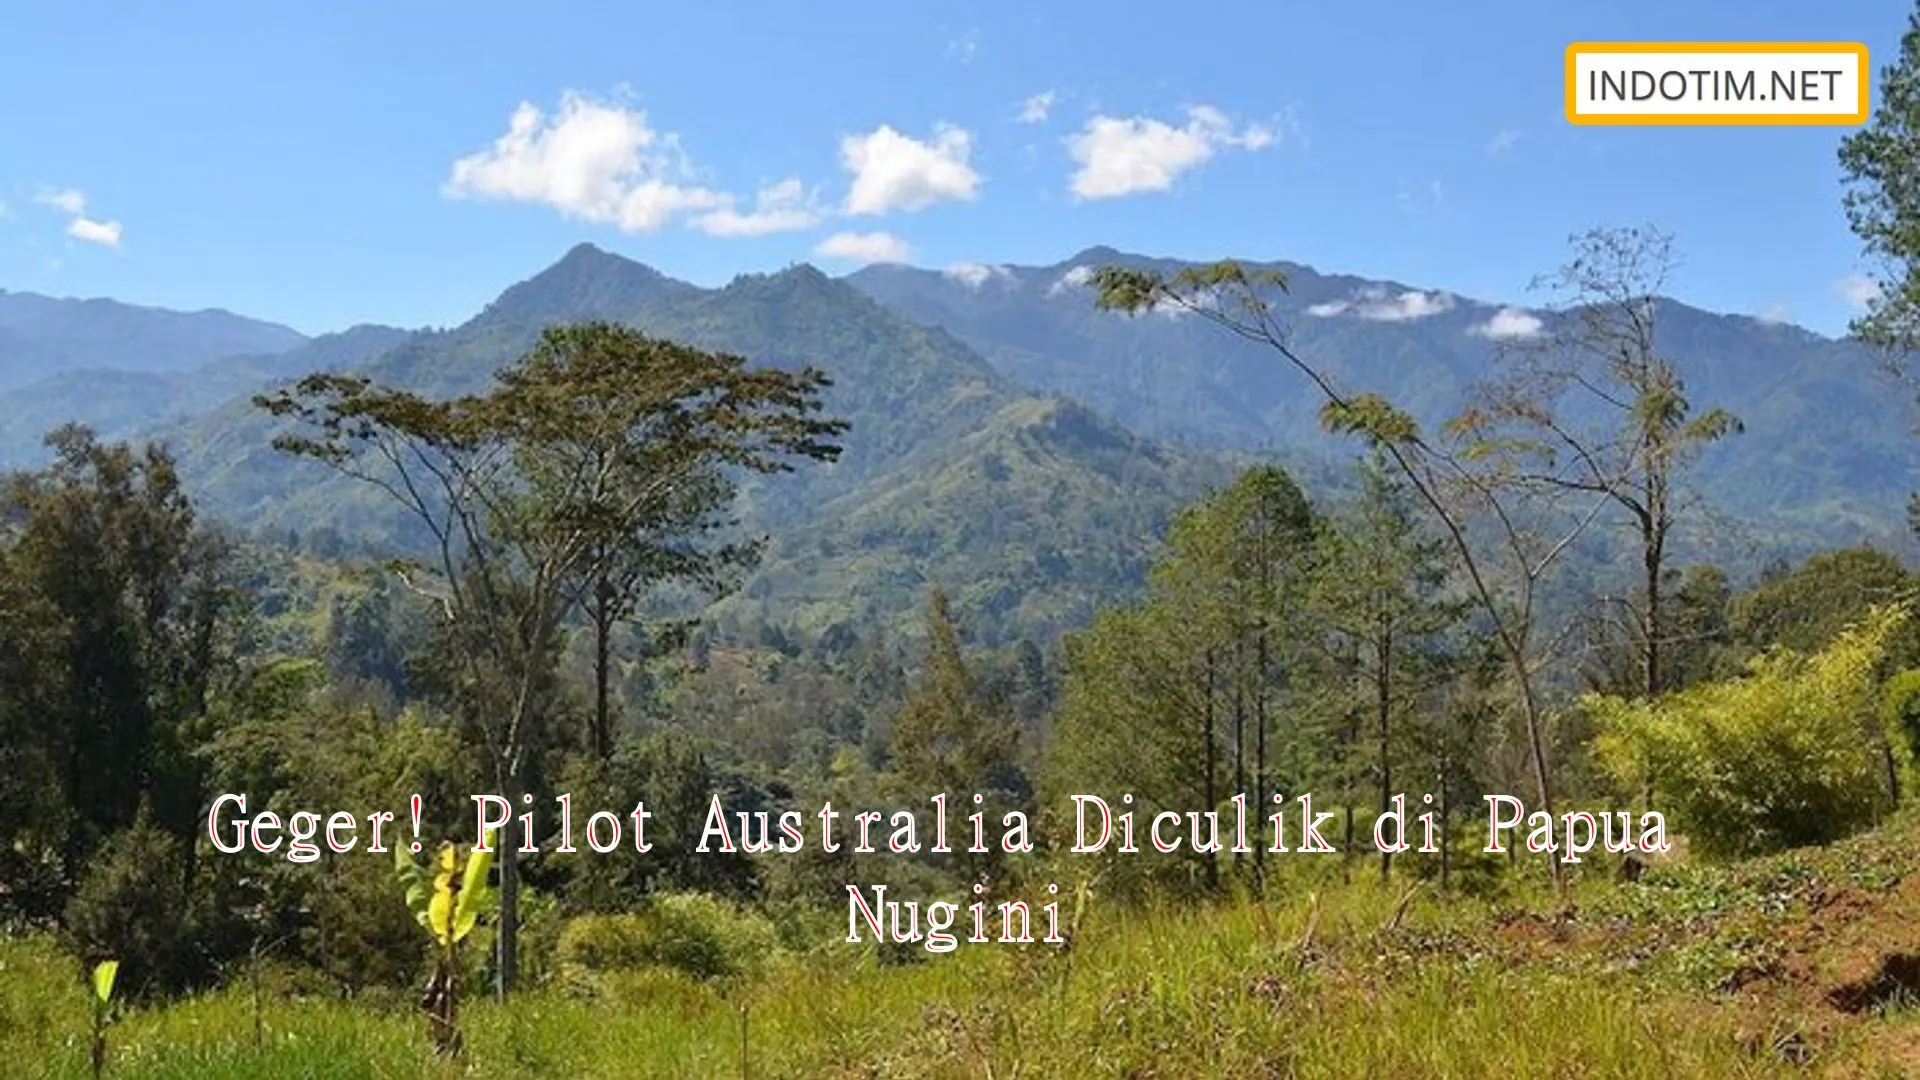 Geger! Pilot Australia Diculik di Papua Nugini